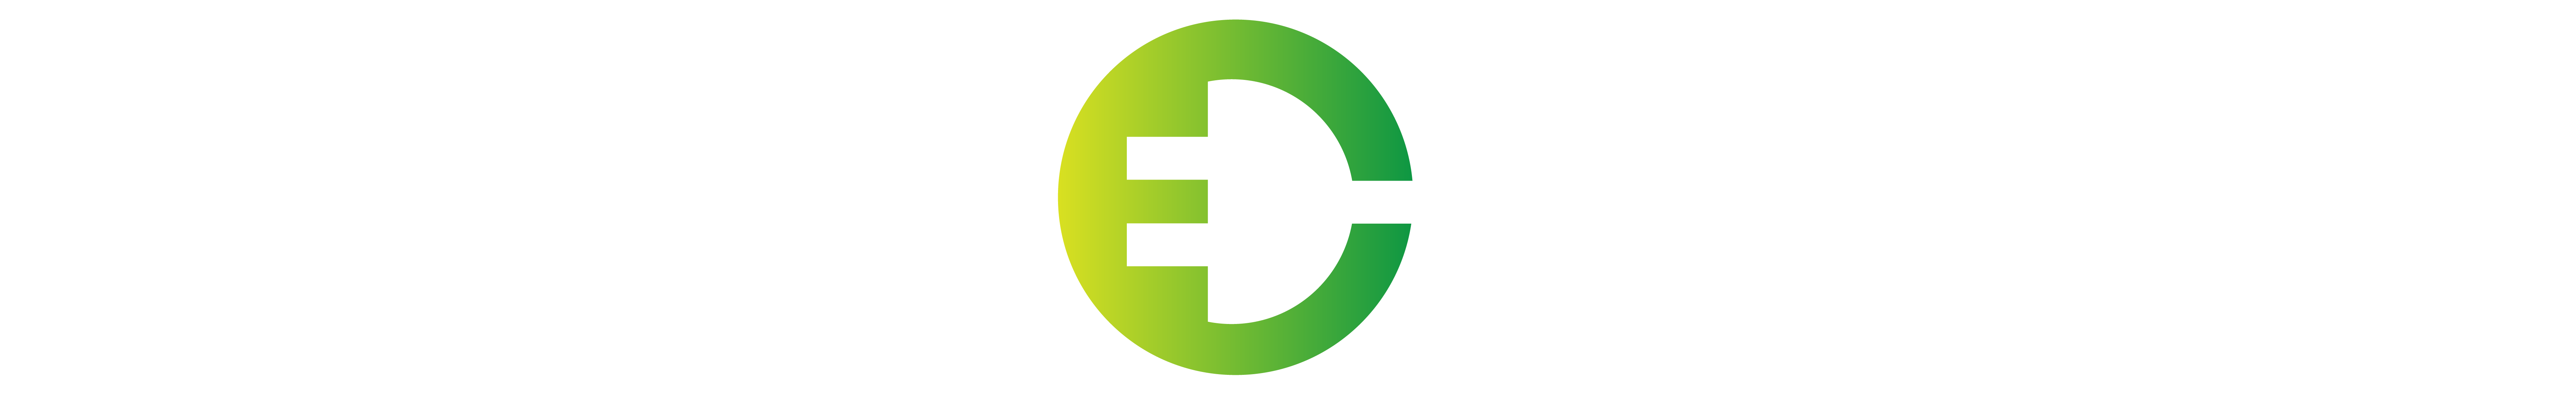 Logo-for-Website-05